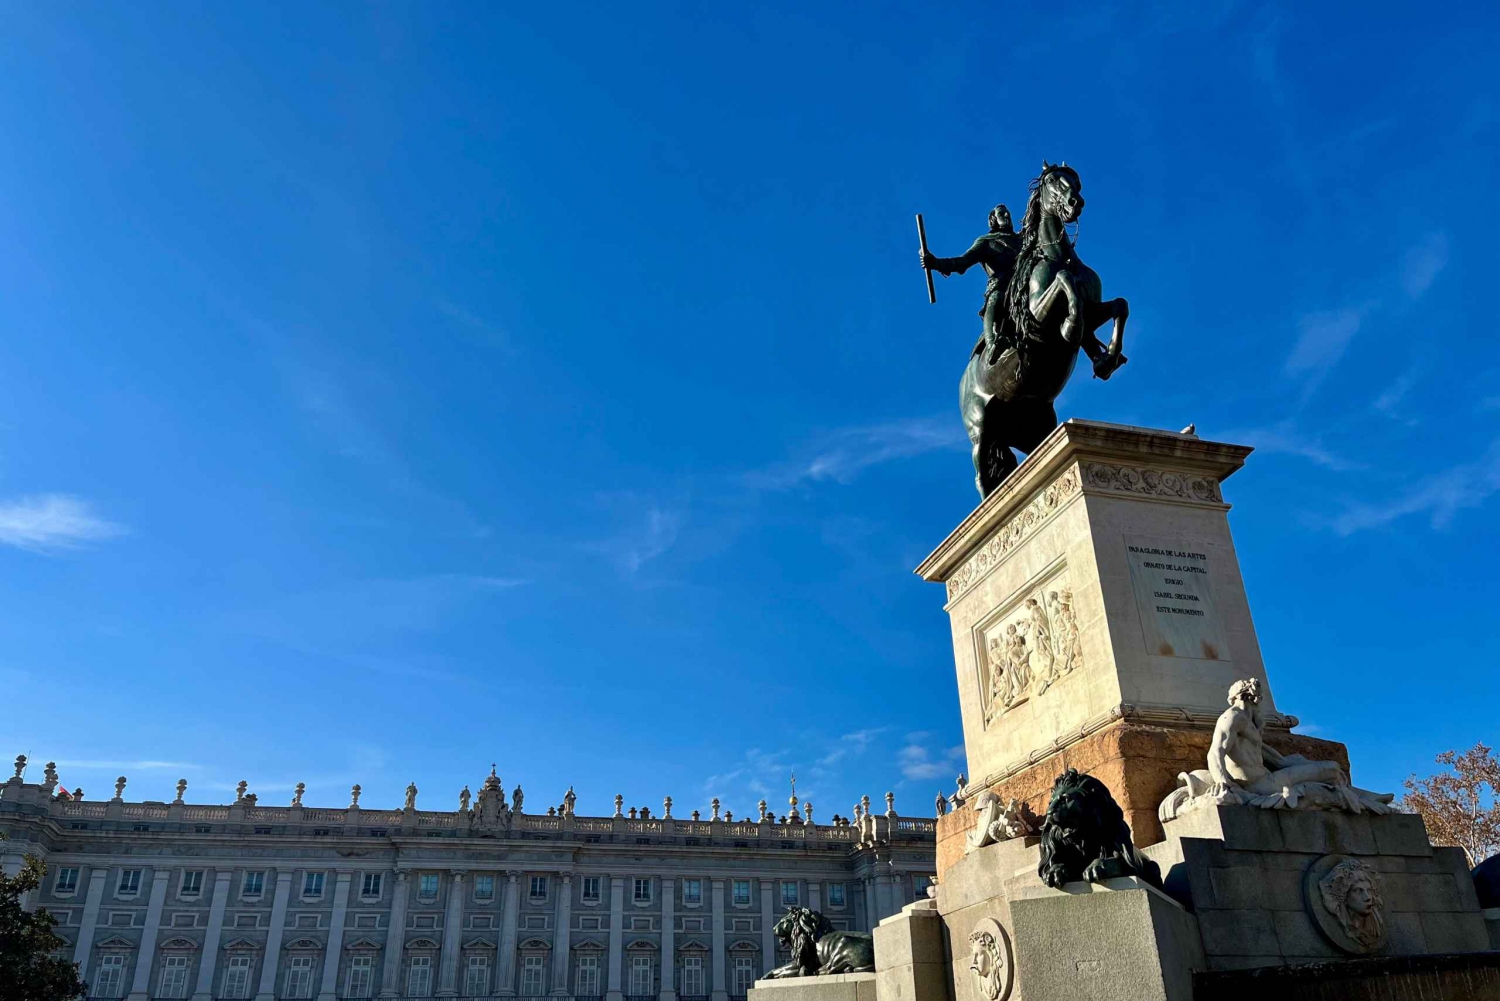 Ontdek Madrid door te zoeken naar de Schat van Filips IV